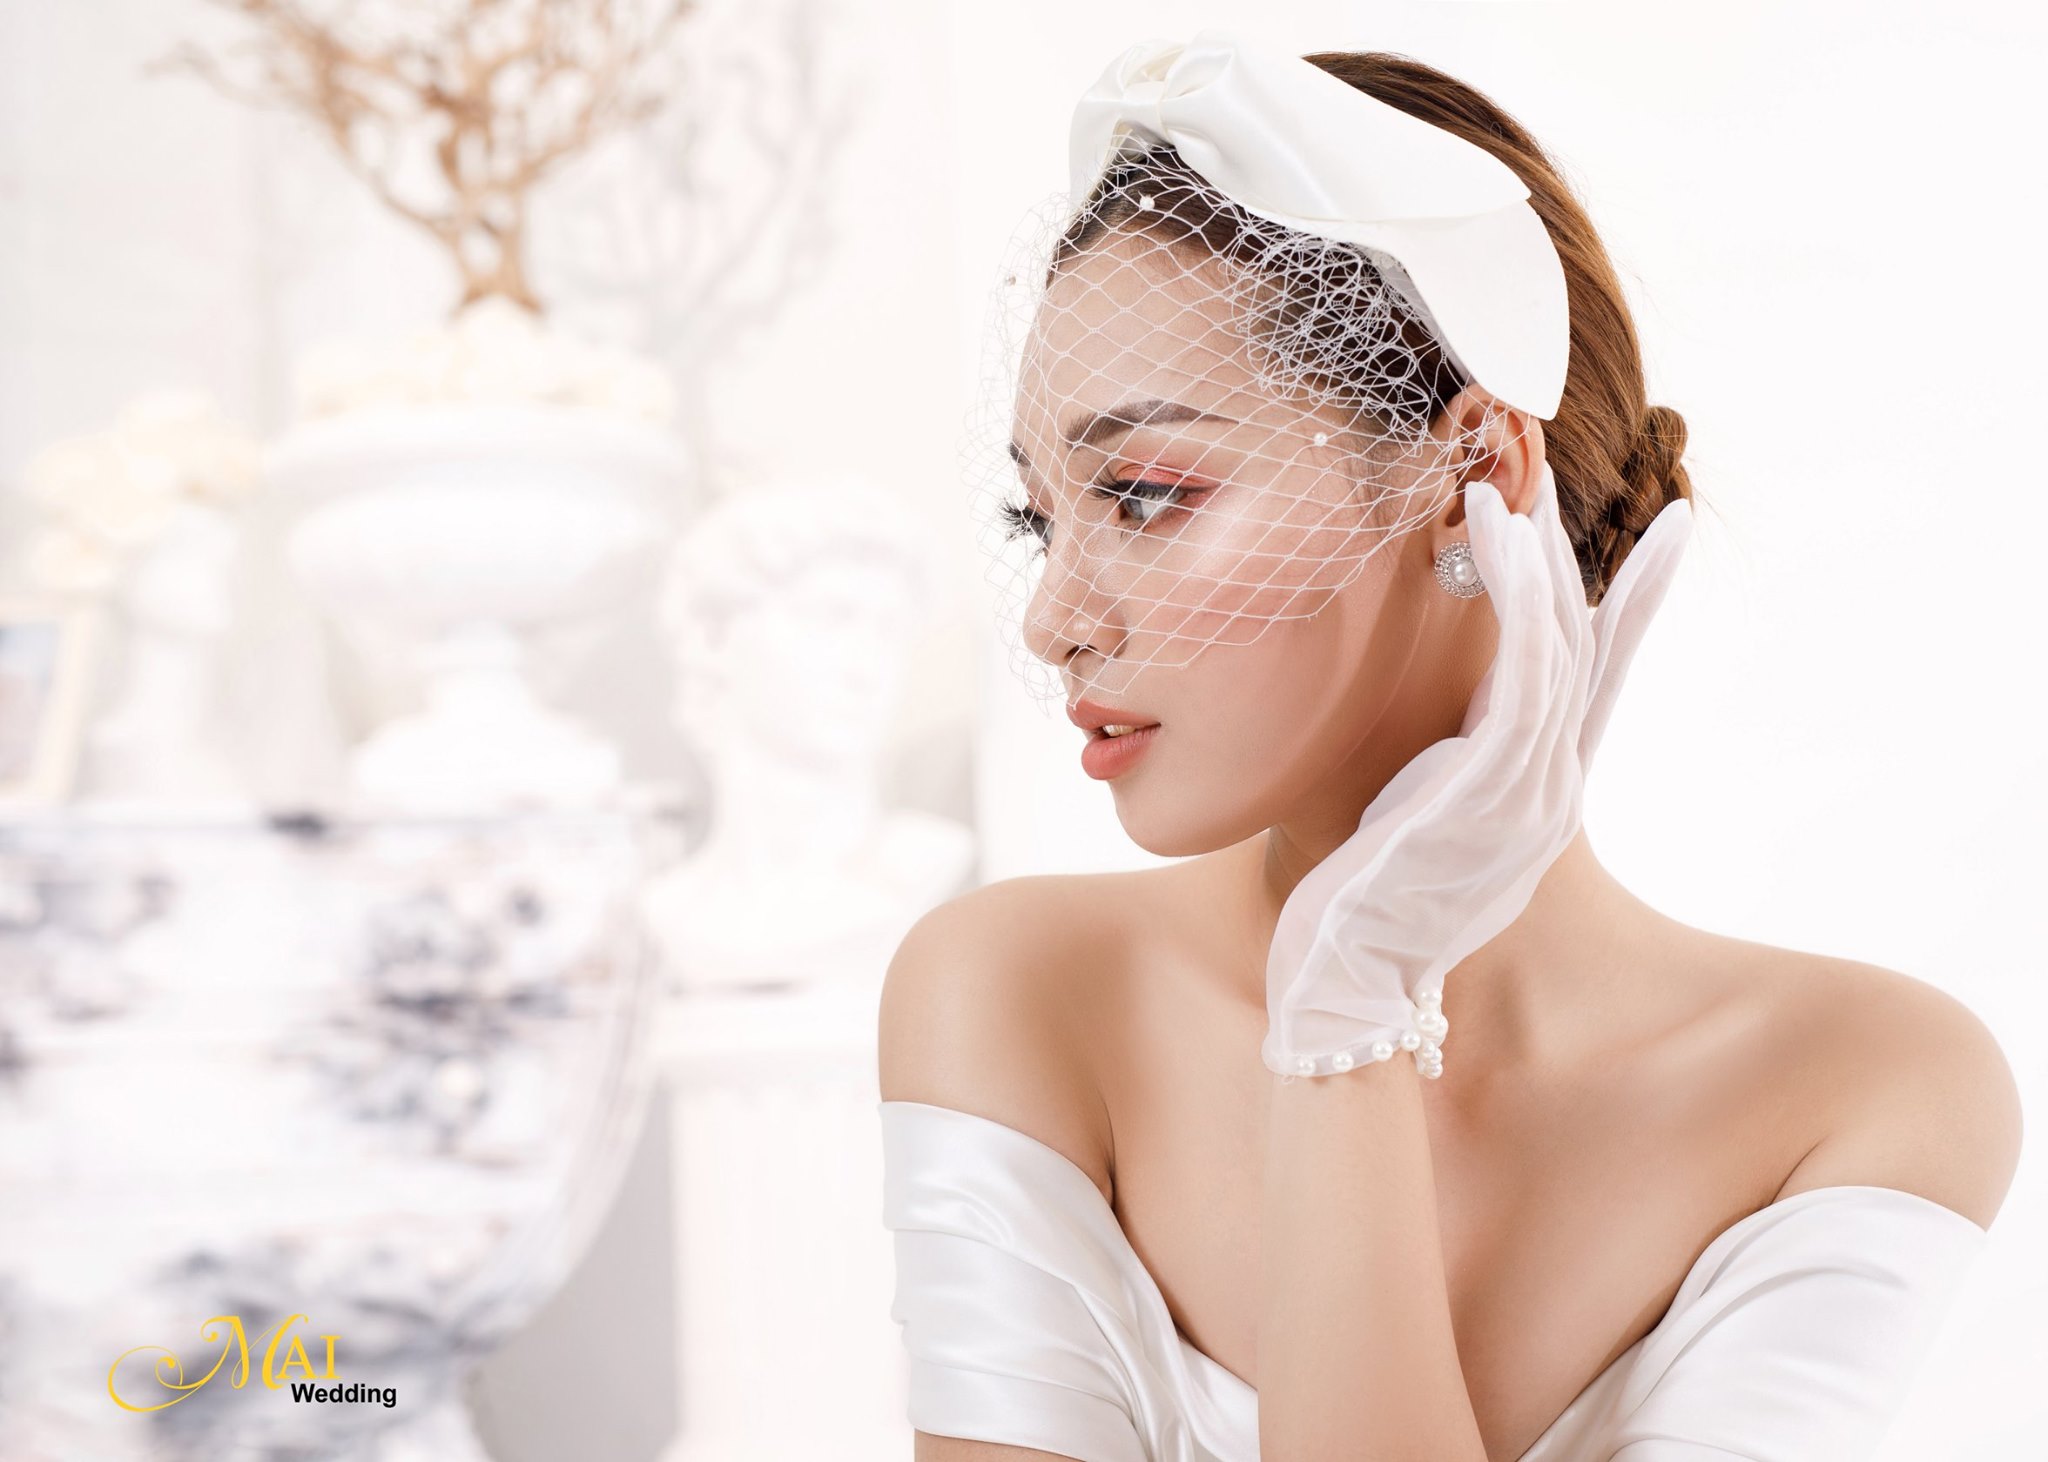 Top 7 tiệm trang điểm cô dâu đẹp nhất tại Đà Nẵng -  Mai Wedding